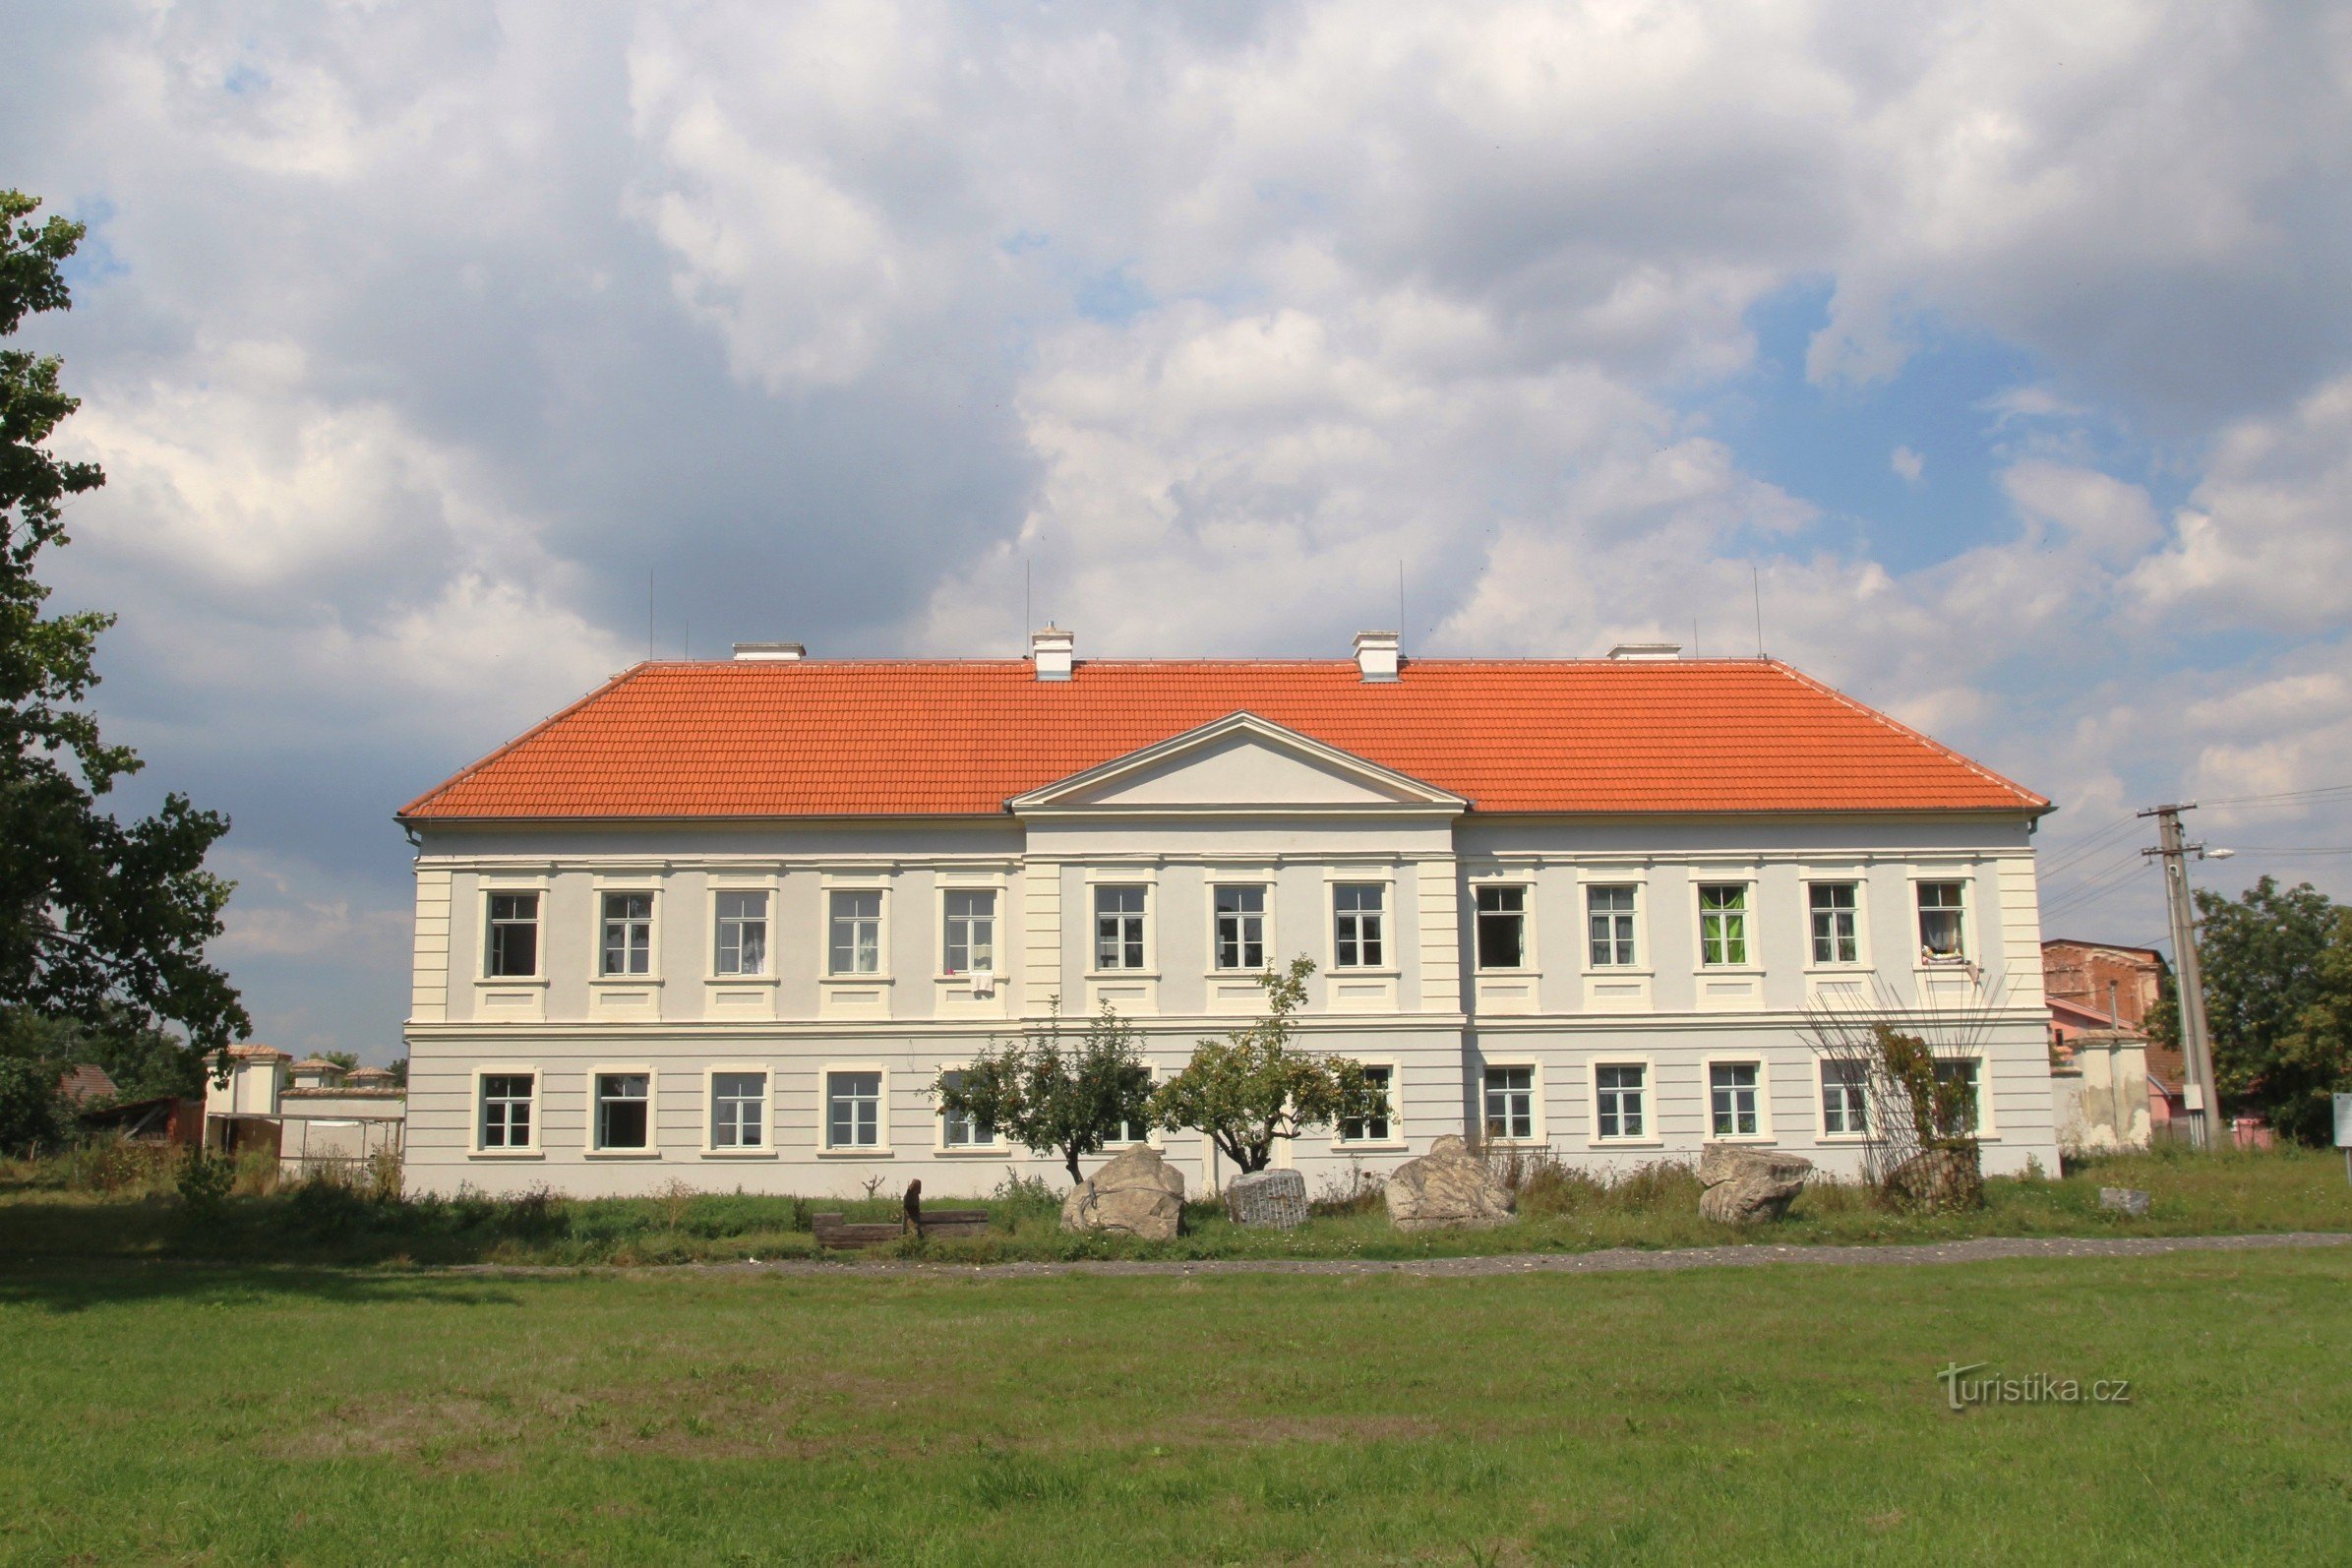 Pohořelice-Velký Dvůr - dvorac Leopoldsruhe 2013.